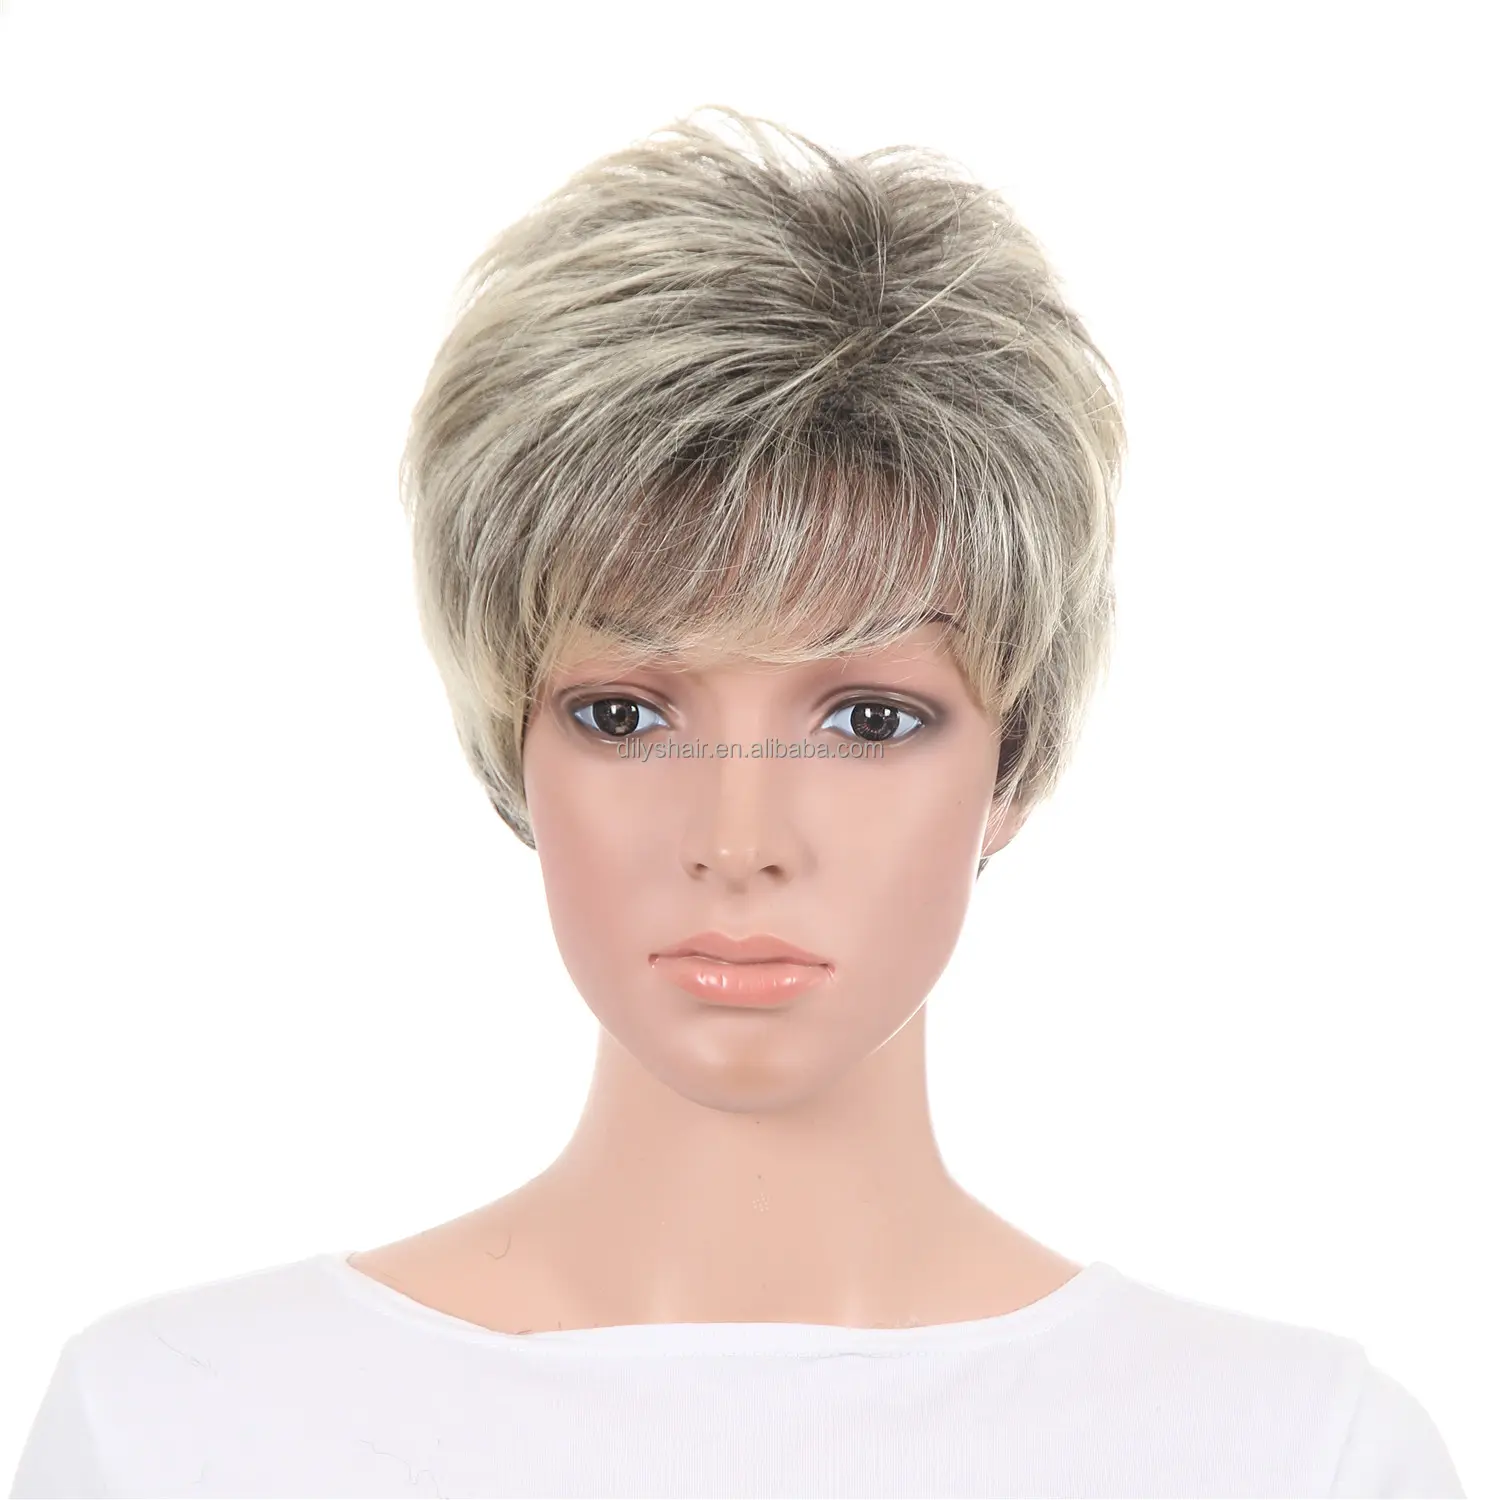 Peluca de cabello corto para mujer, pelo sintético, corte de pelo liso, color rubio, n. ° 613